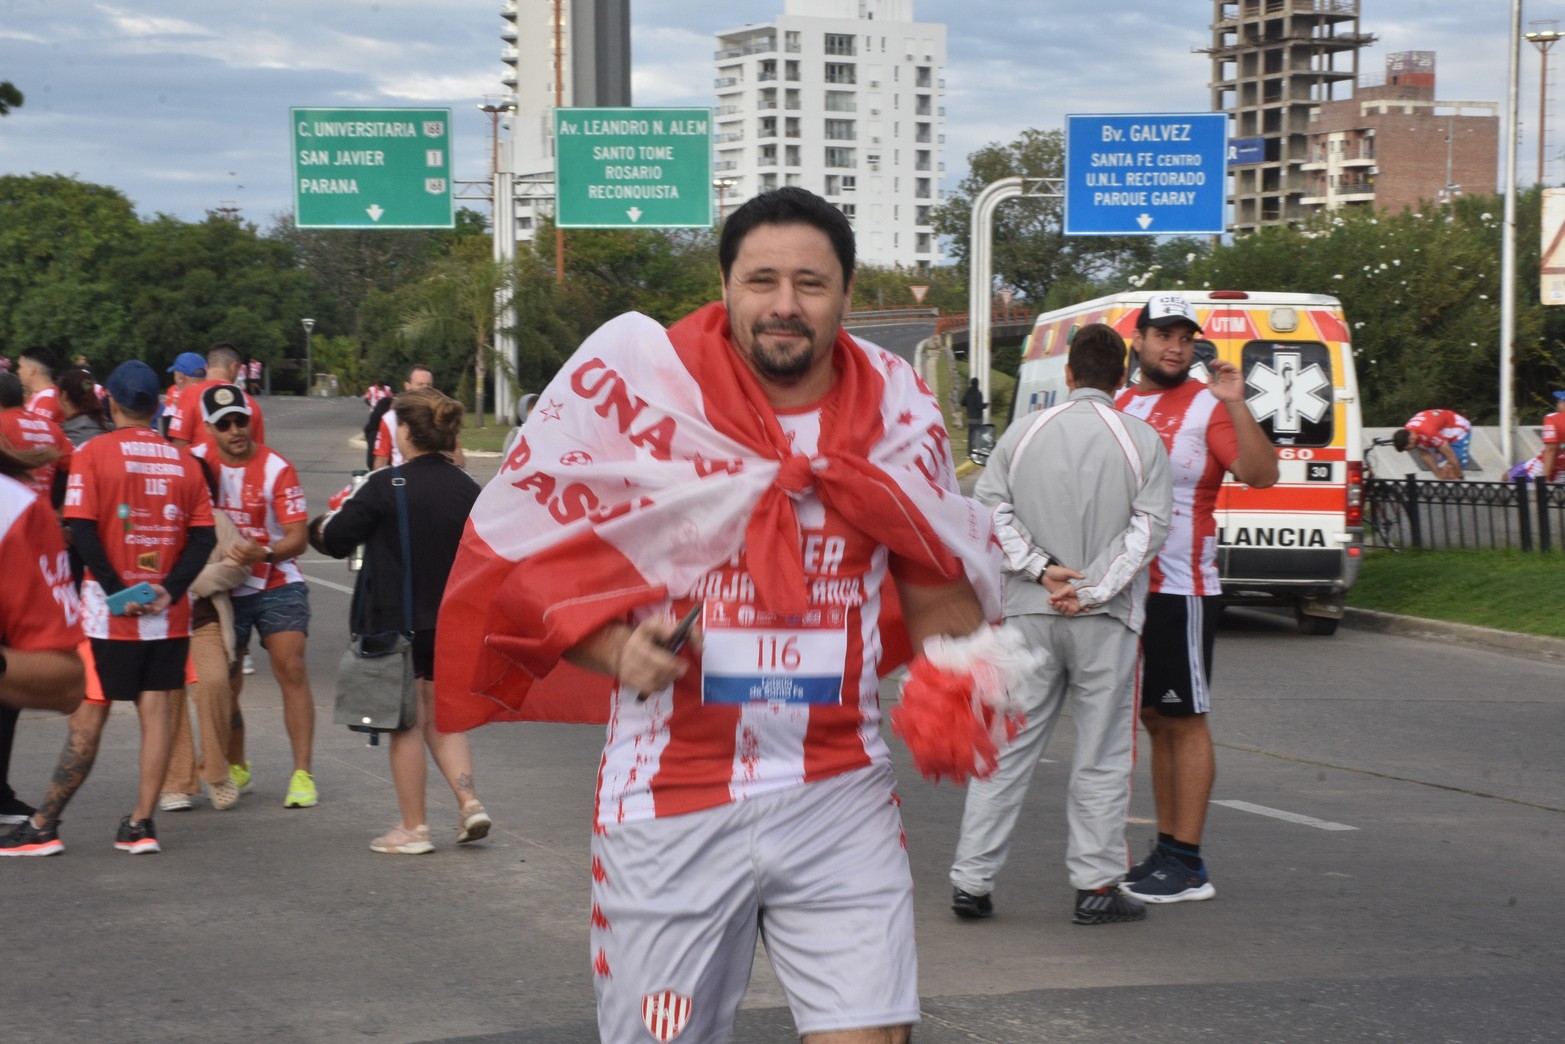 Maratón Marea Roja y Blanca